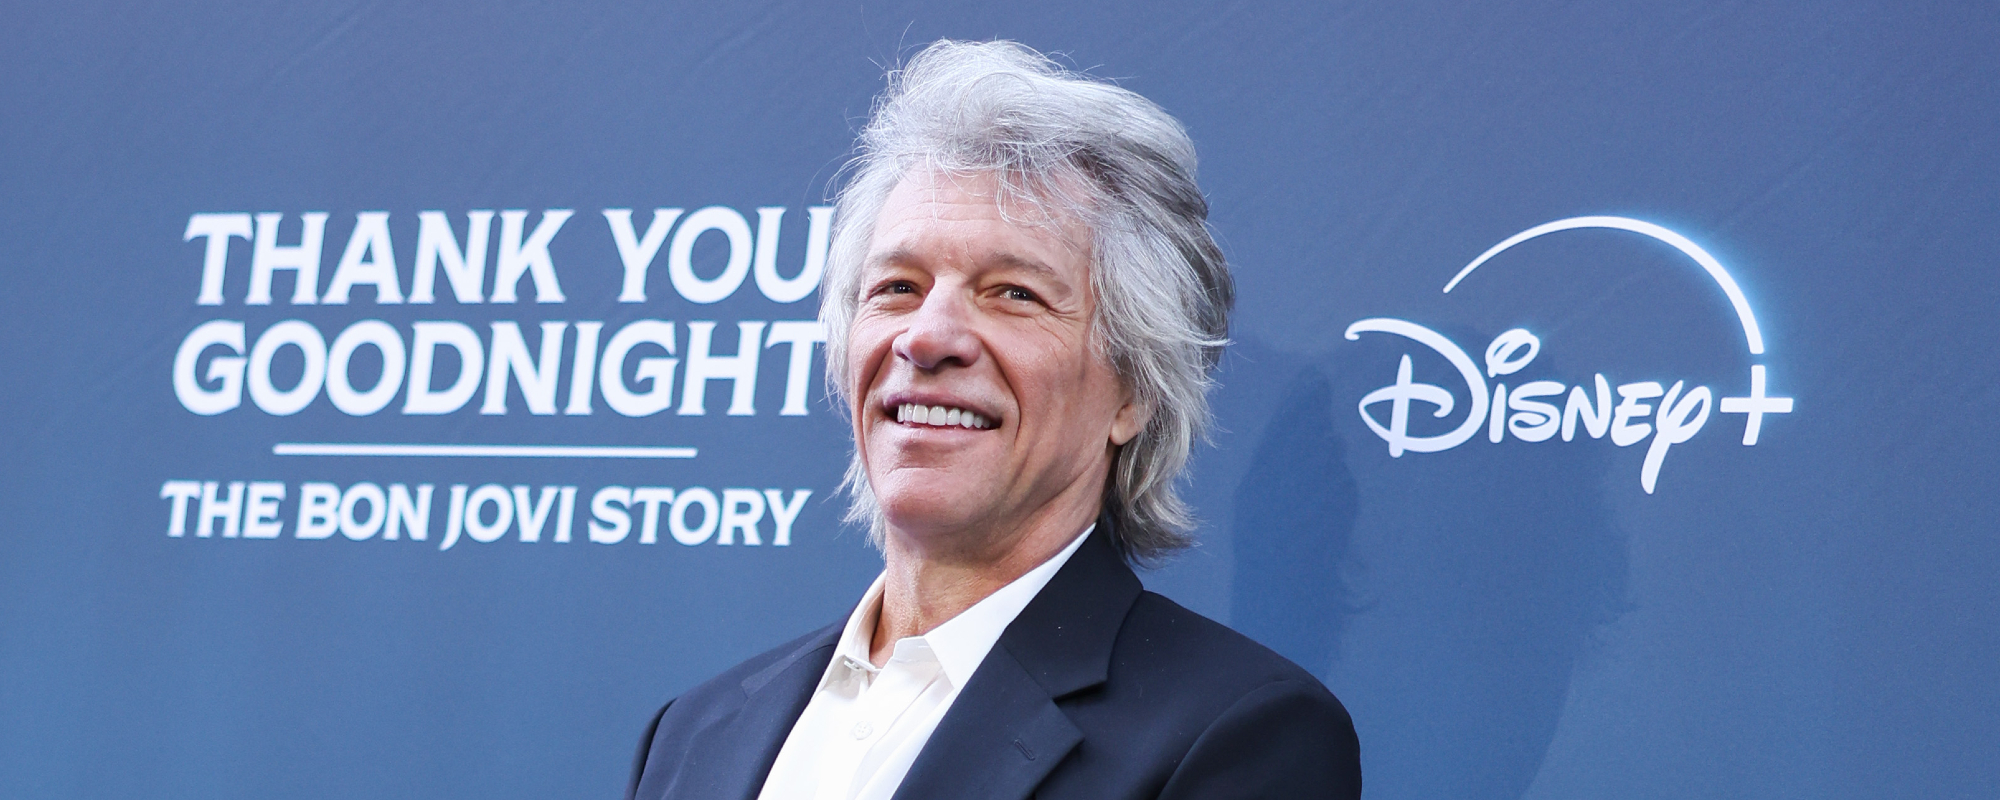 Jon Bon Jovi Admits He Wasn’t a Fan of "Livin’ on a Prayer" When First Recorded